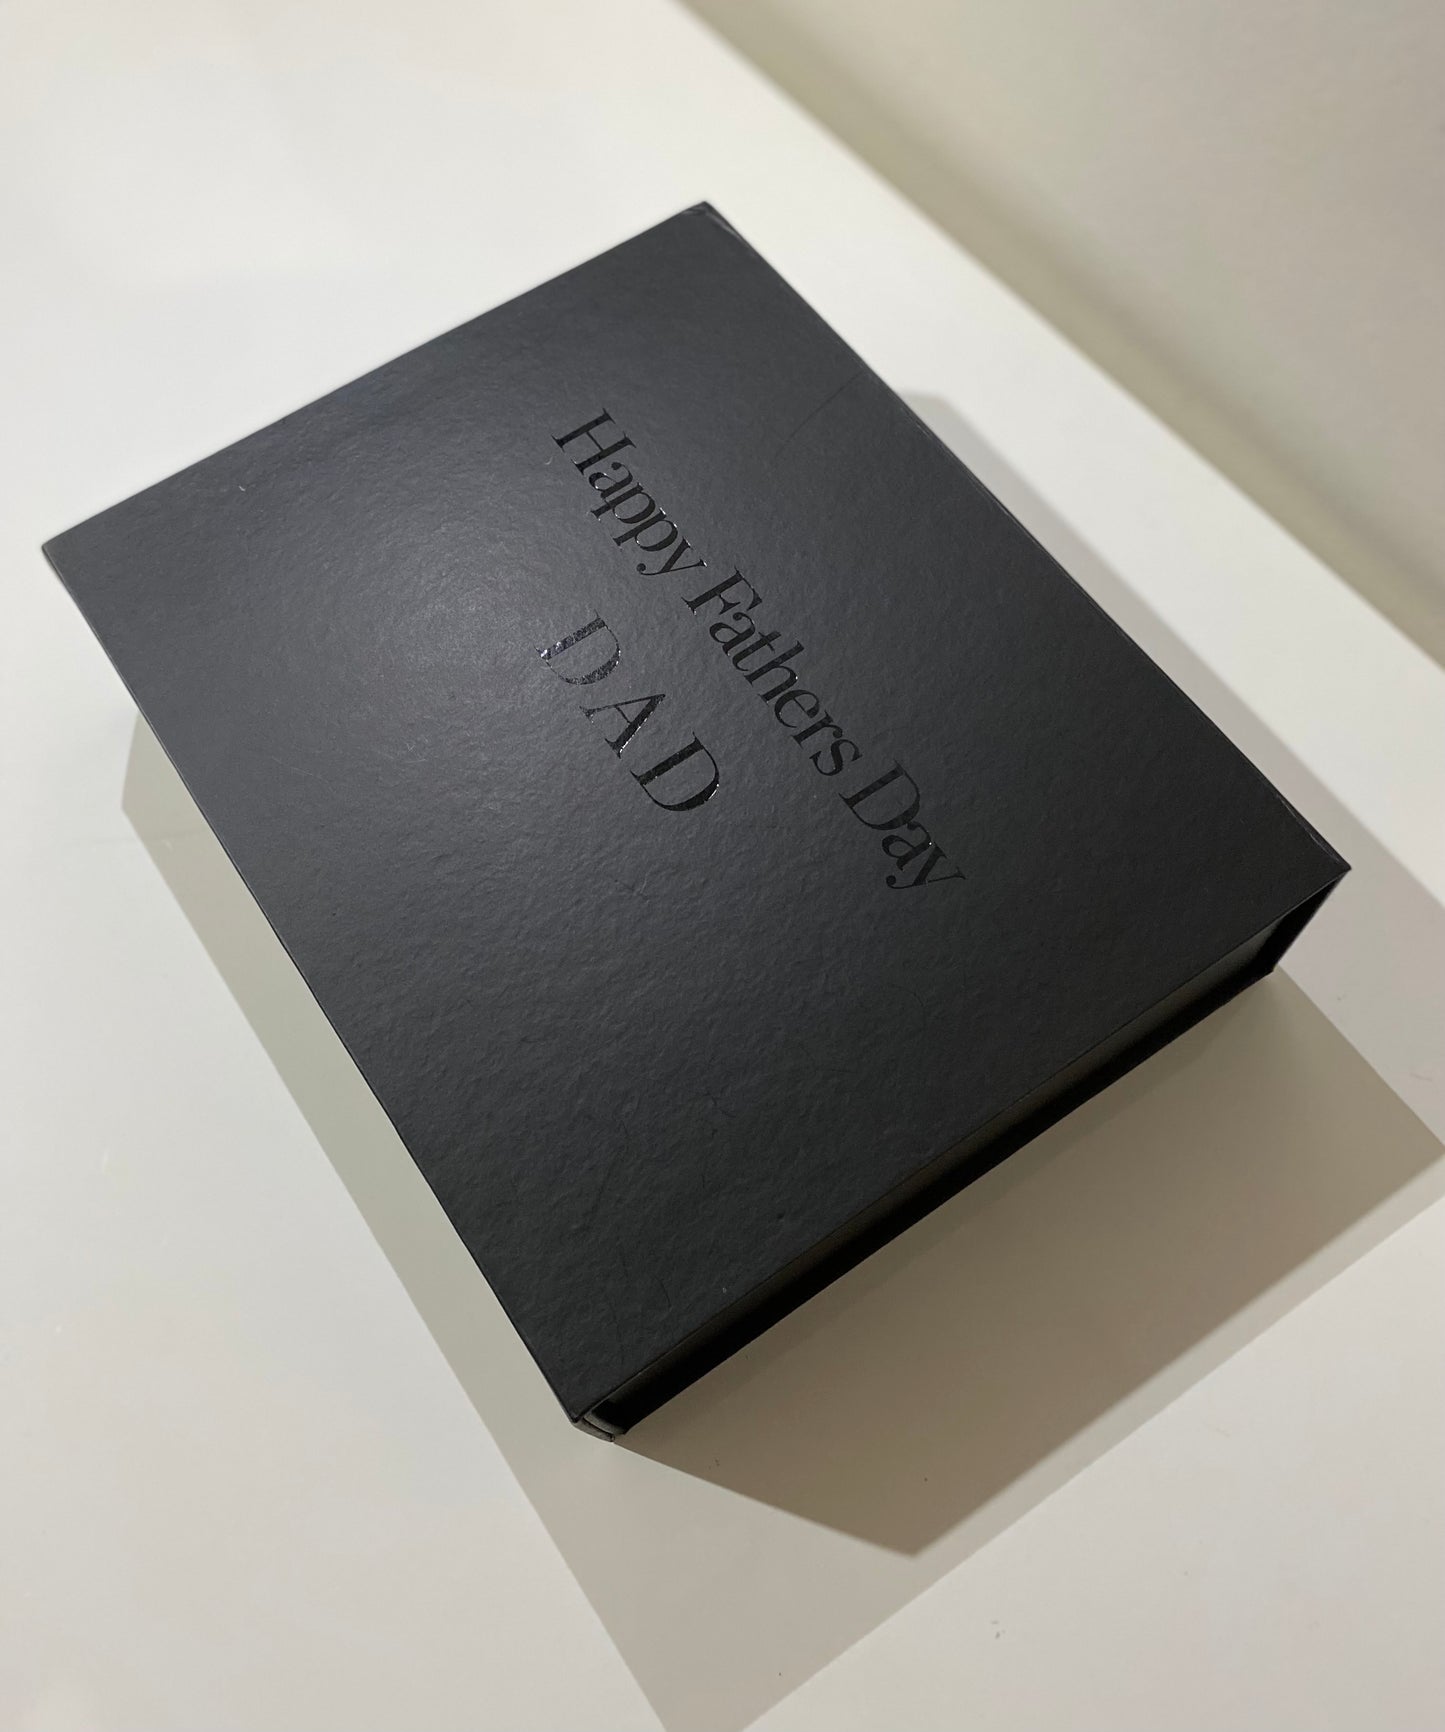 Groomsman Black Gift Box (Large)